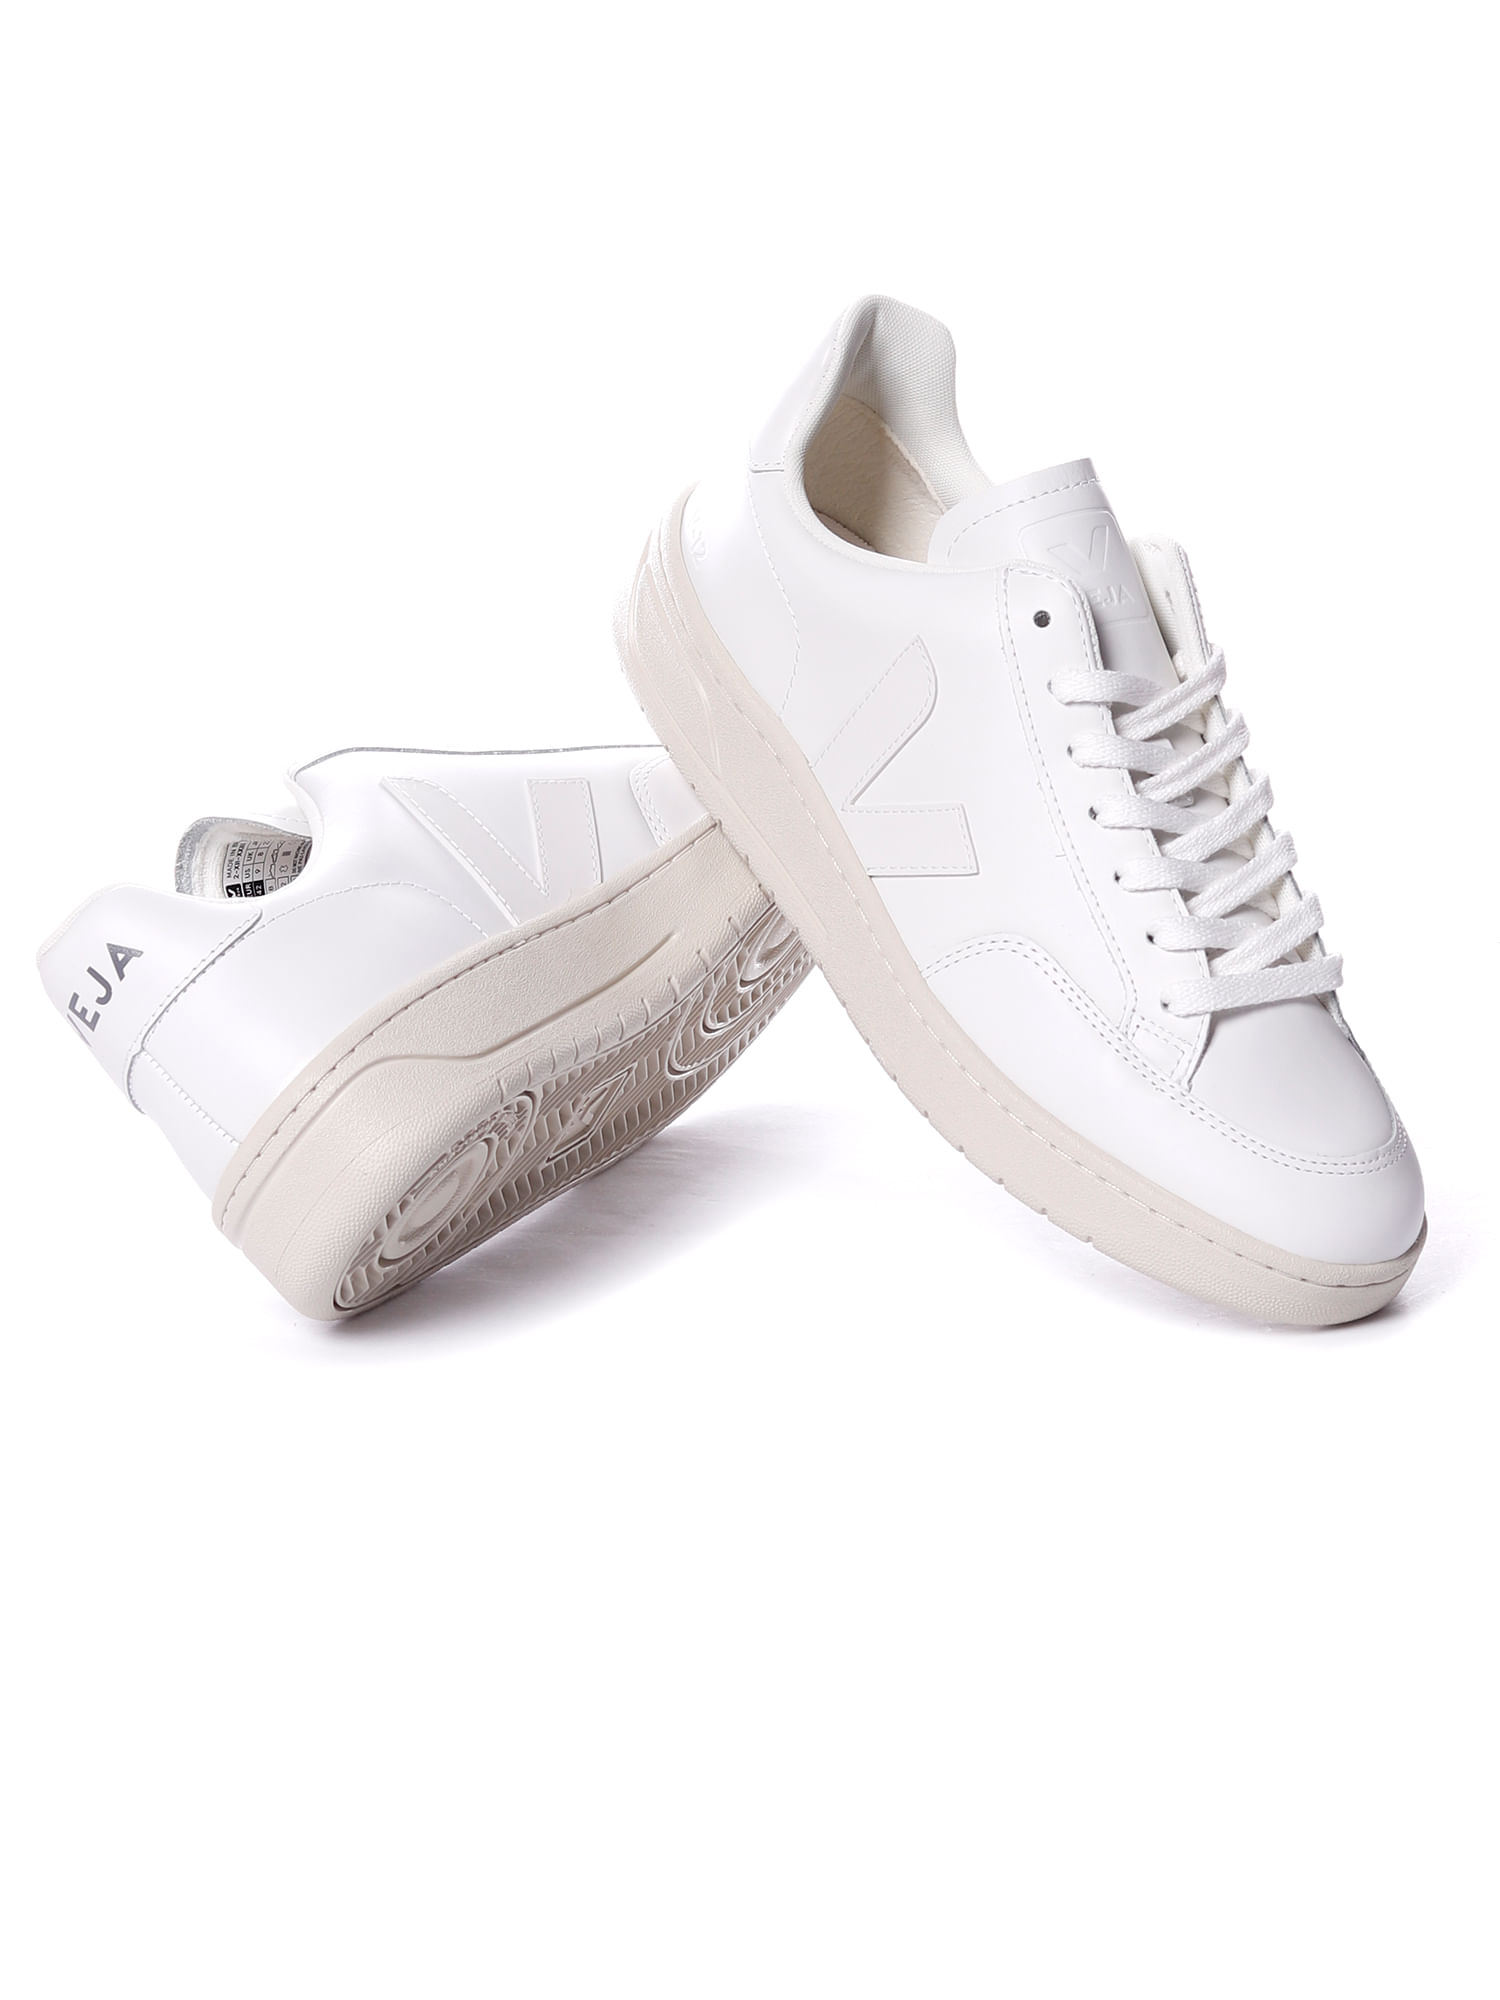 Tenis-veja-v-12-leather-white-White